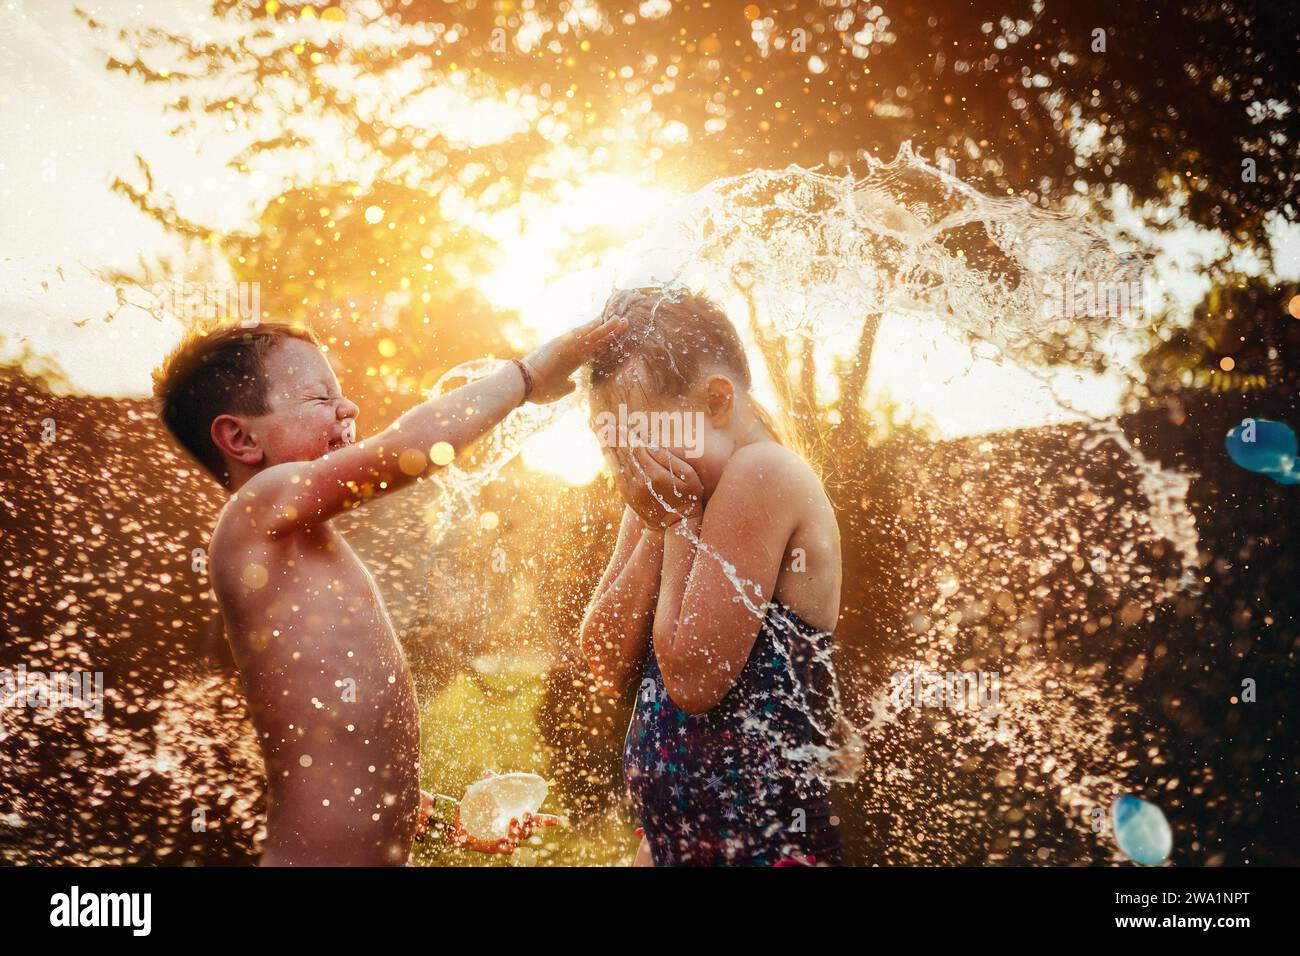 Deux enfants jouant avec des ballons d'eau en été Banque D'Images